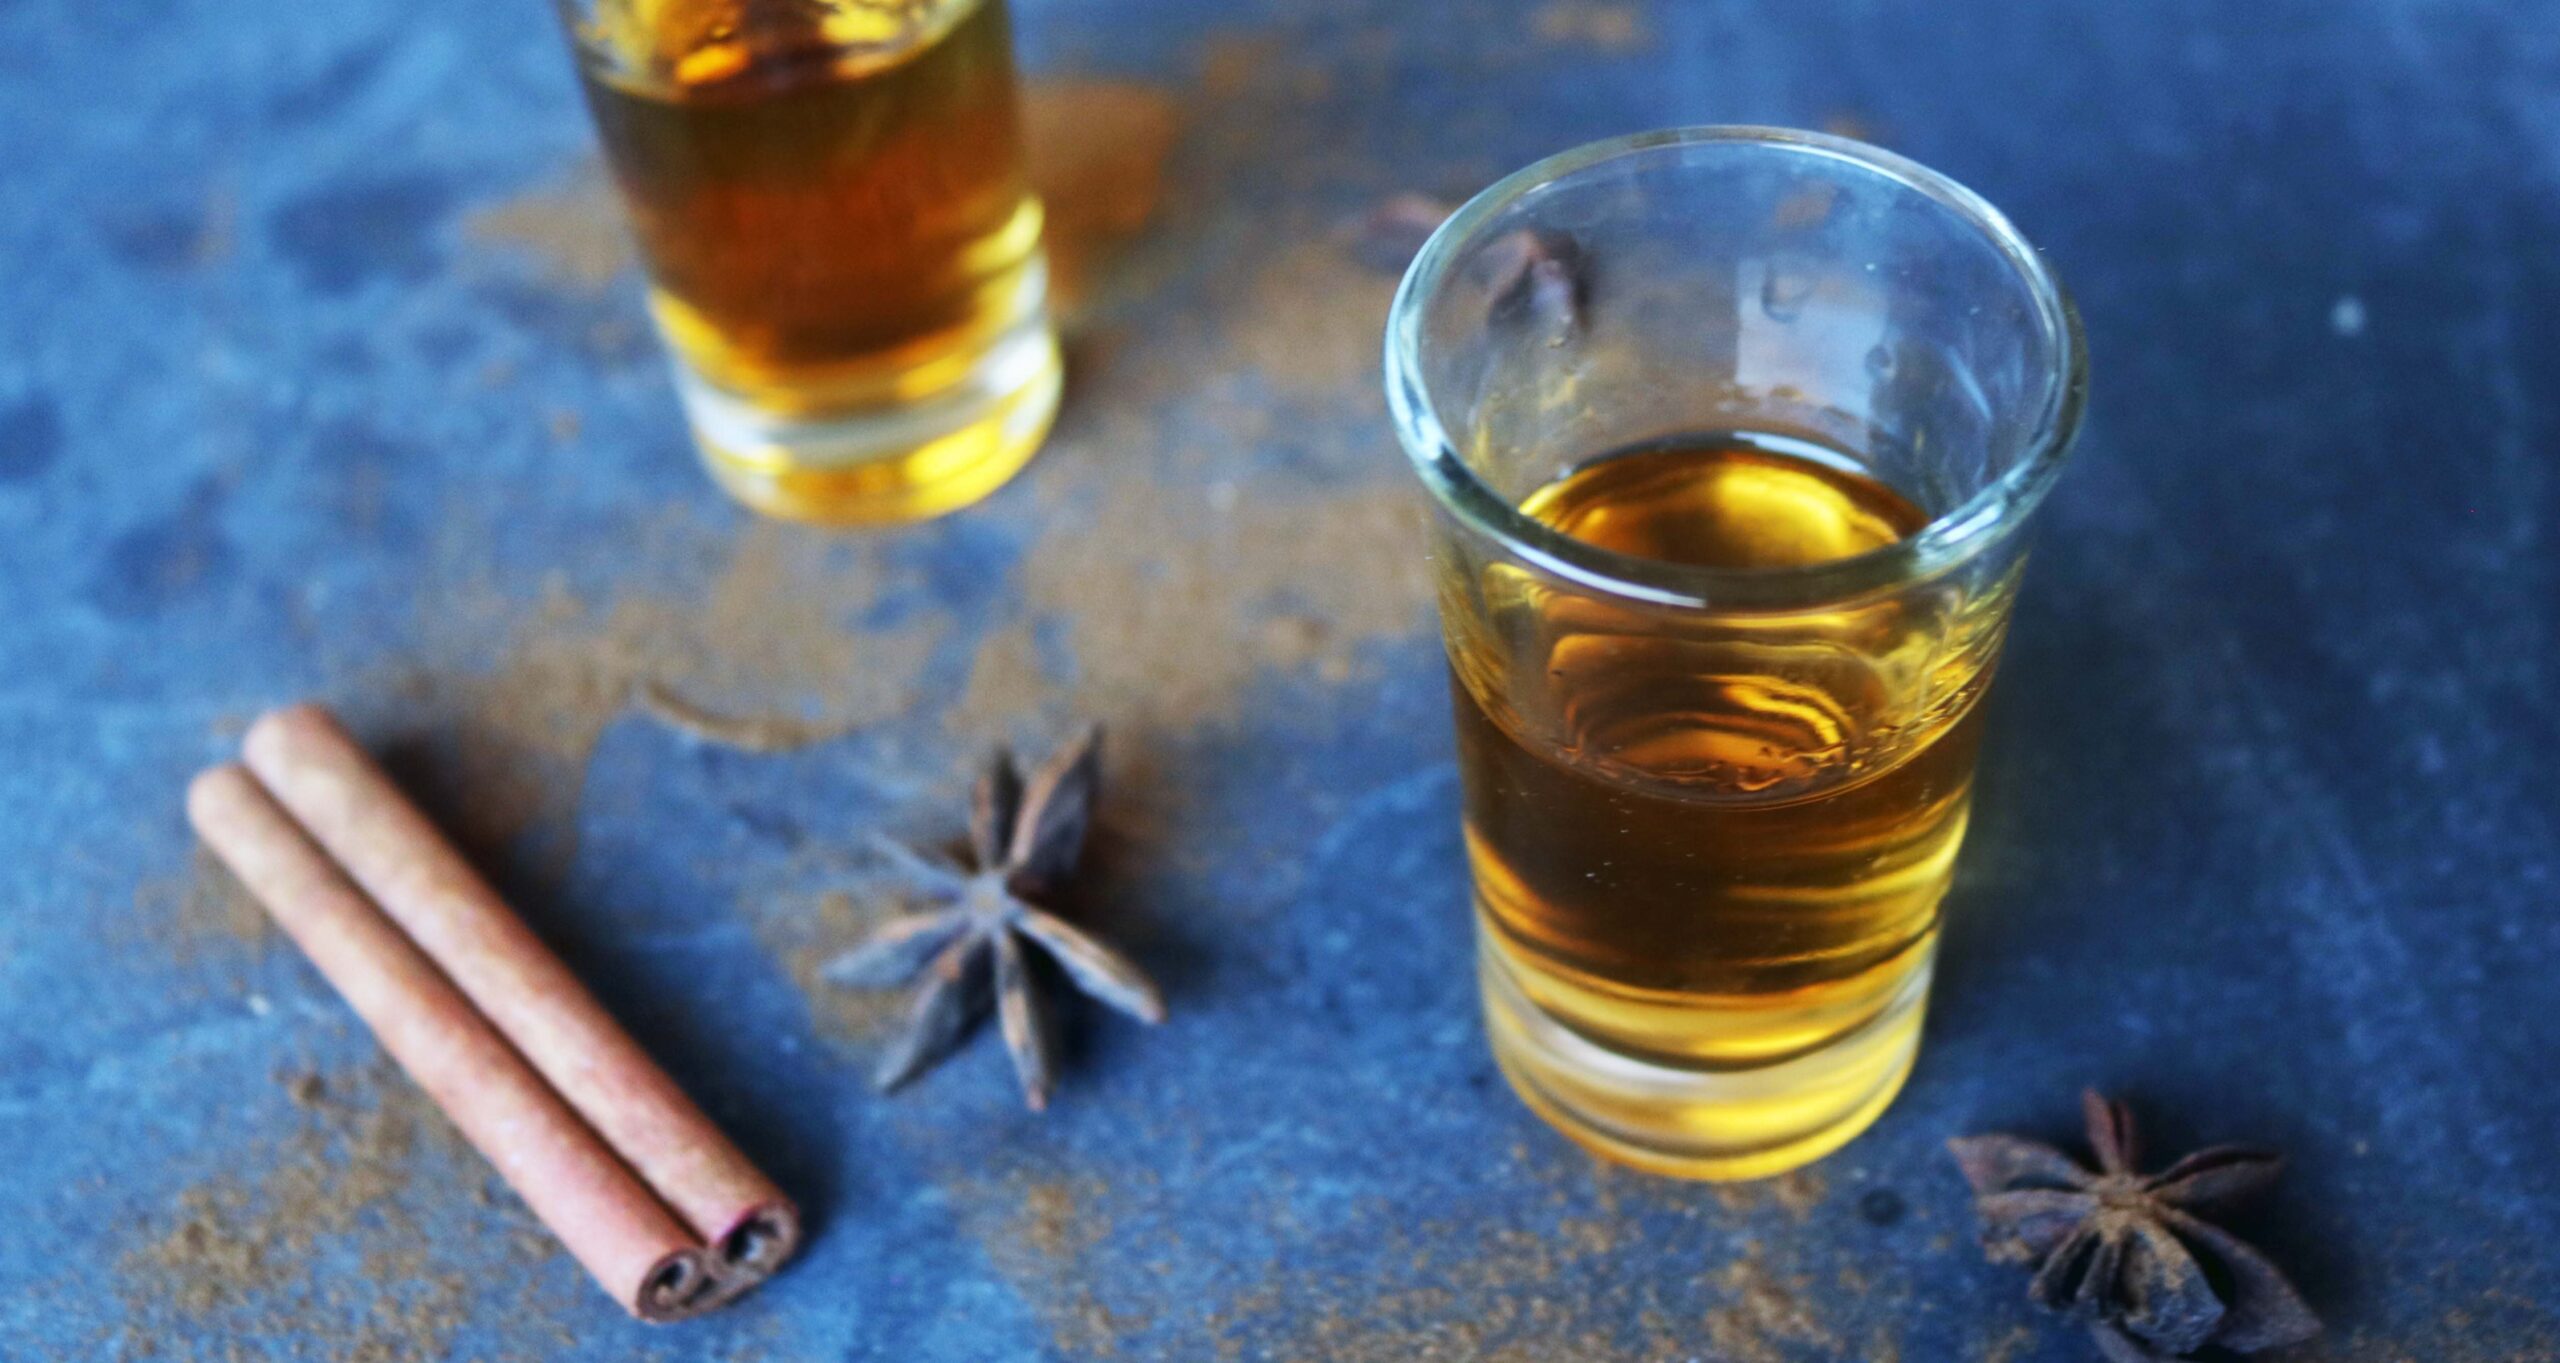 9 formas de usar whisky en la brujería